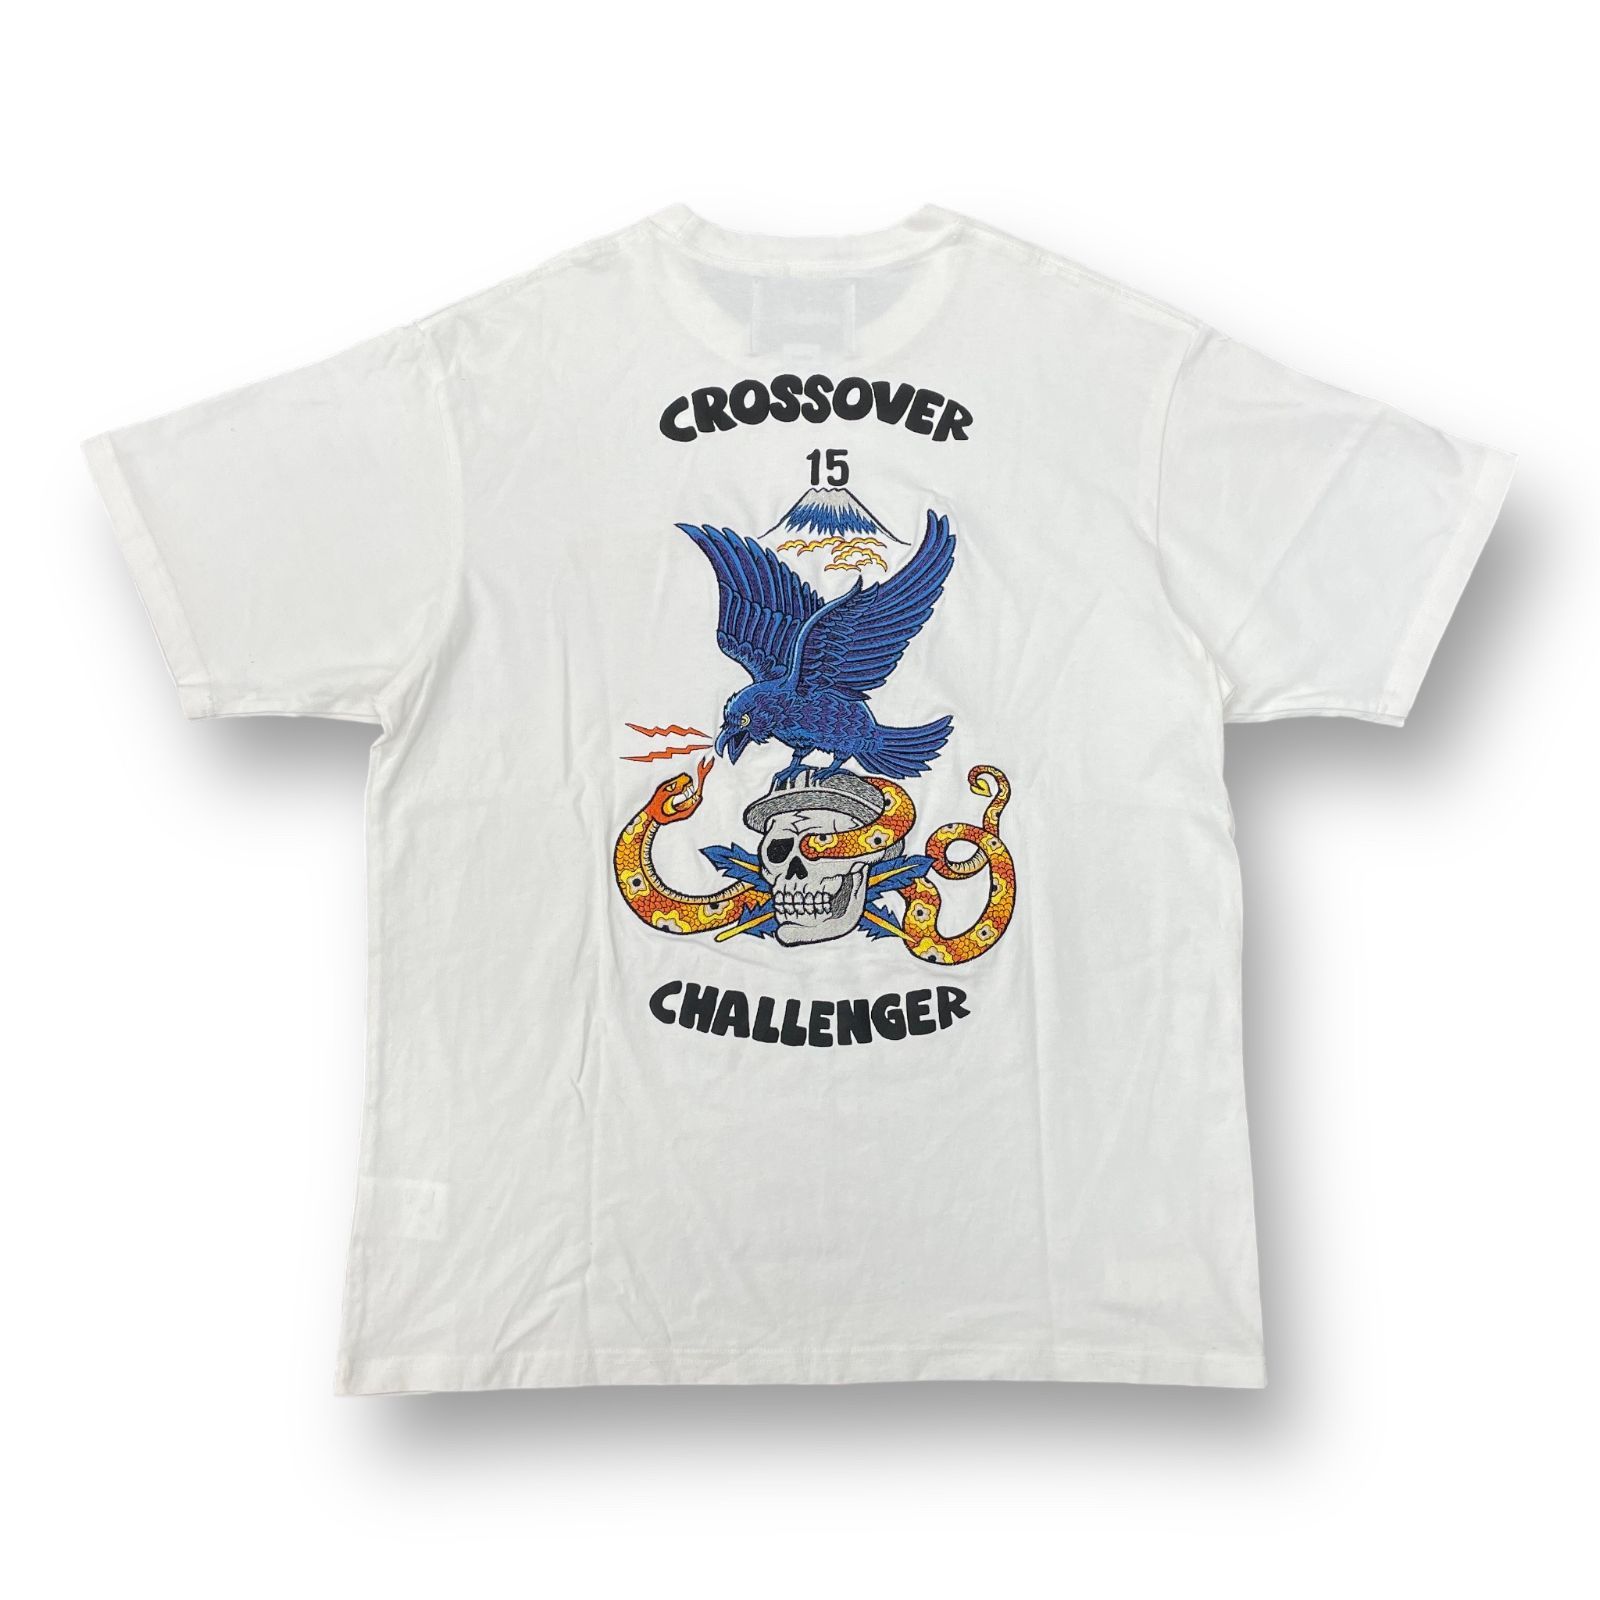 希少 Challenger チャレンジャー Tシャツ